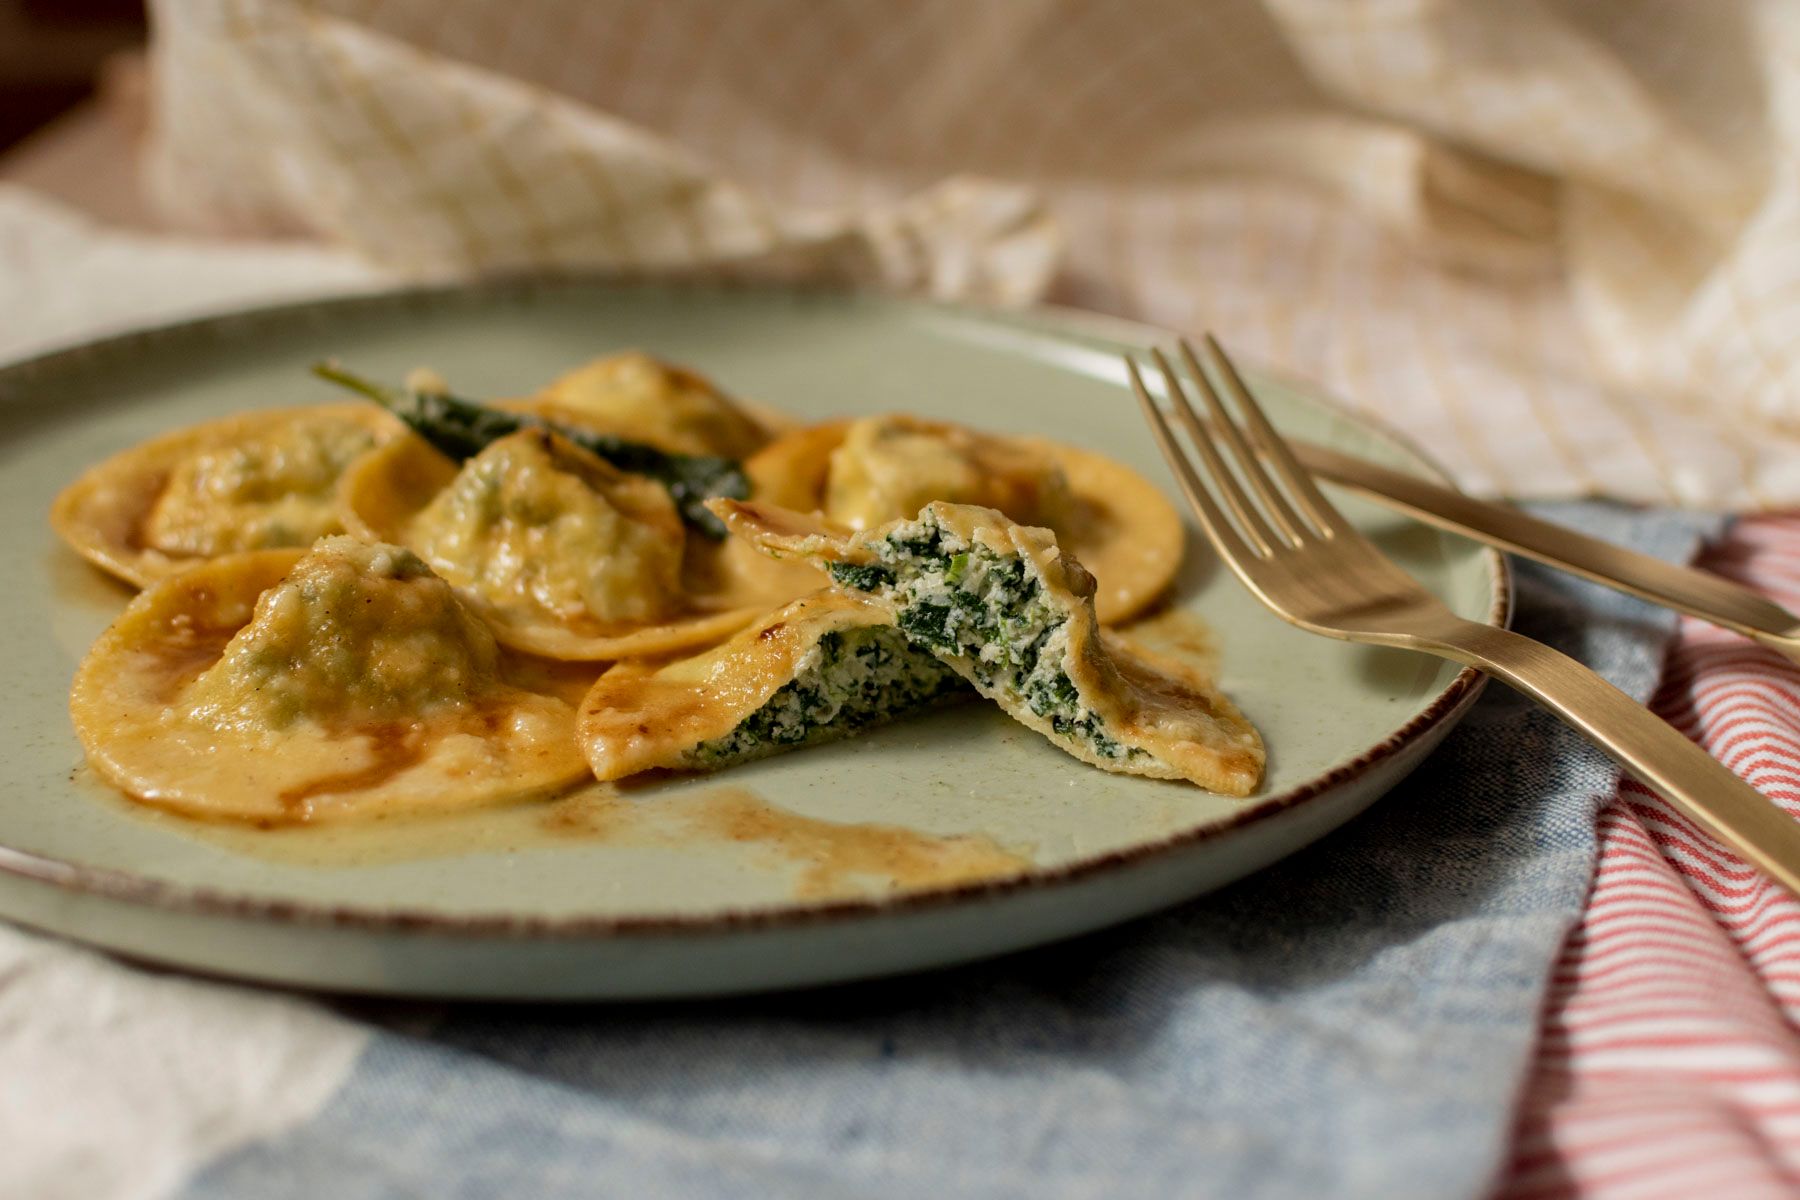 ravioli réalisés grâce au cours "Cuisine Italienne : Apprenez à confectionner vos pates maison" d'Artesane